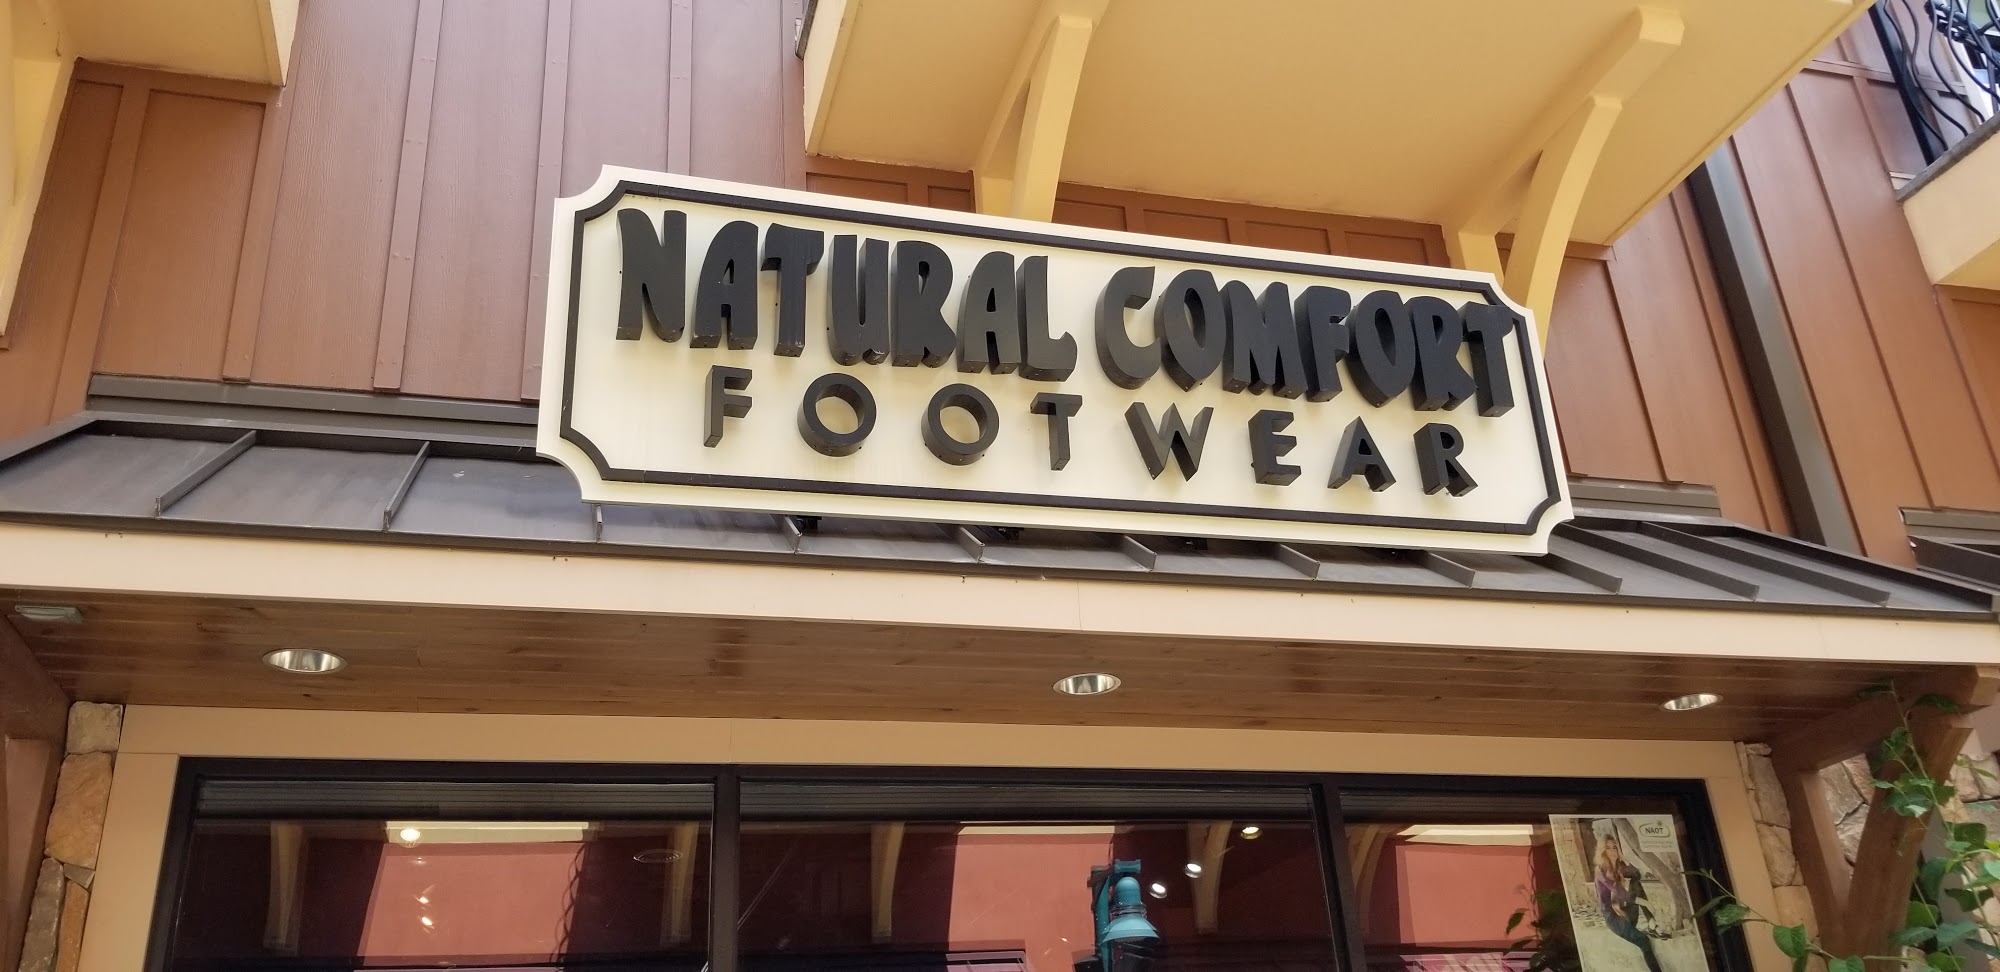 Natural Comfort Footwear